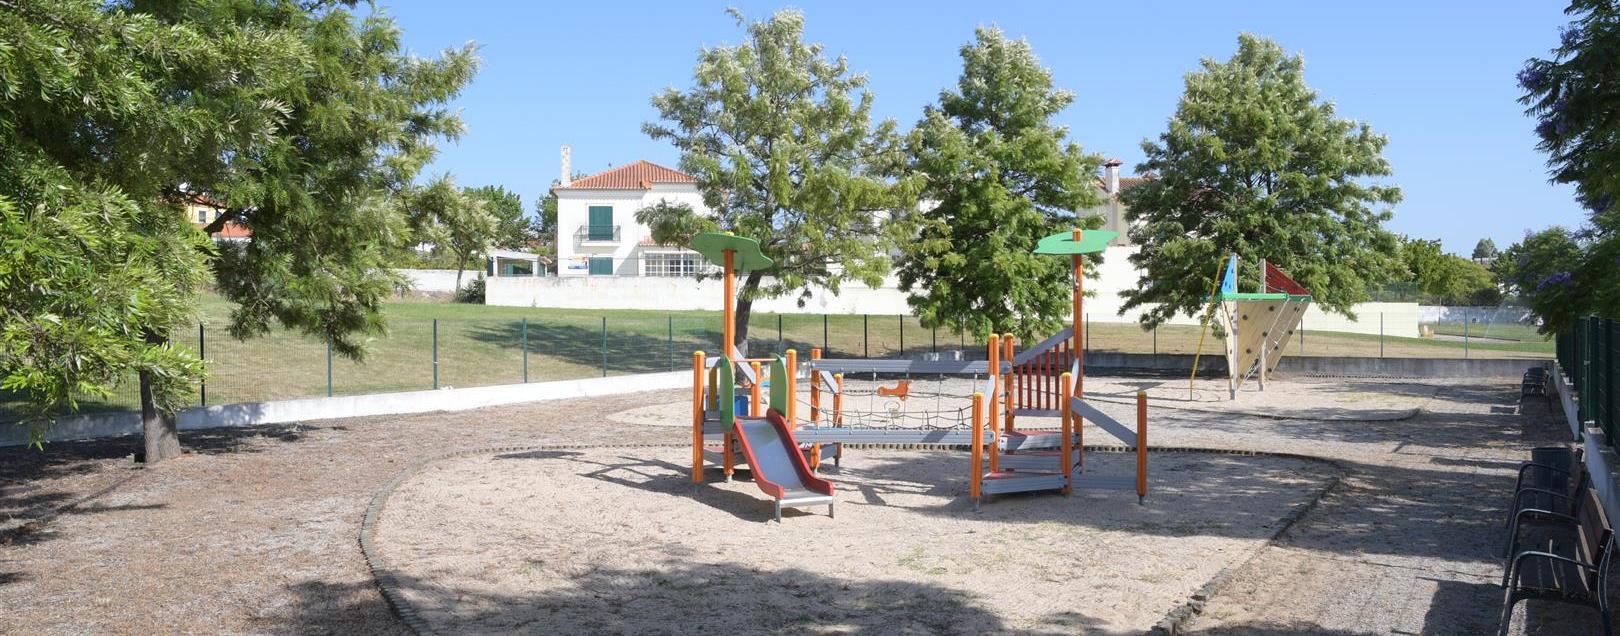 Reabilitação de parques infantis vai custar 160 mil euros